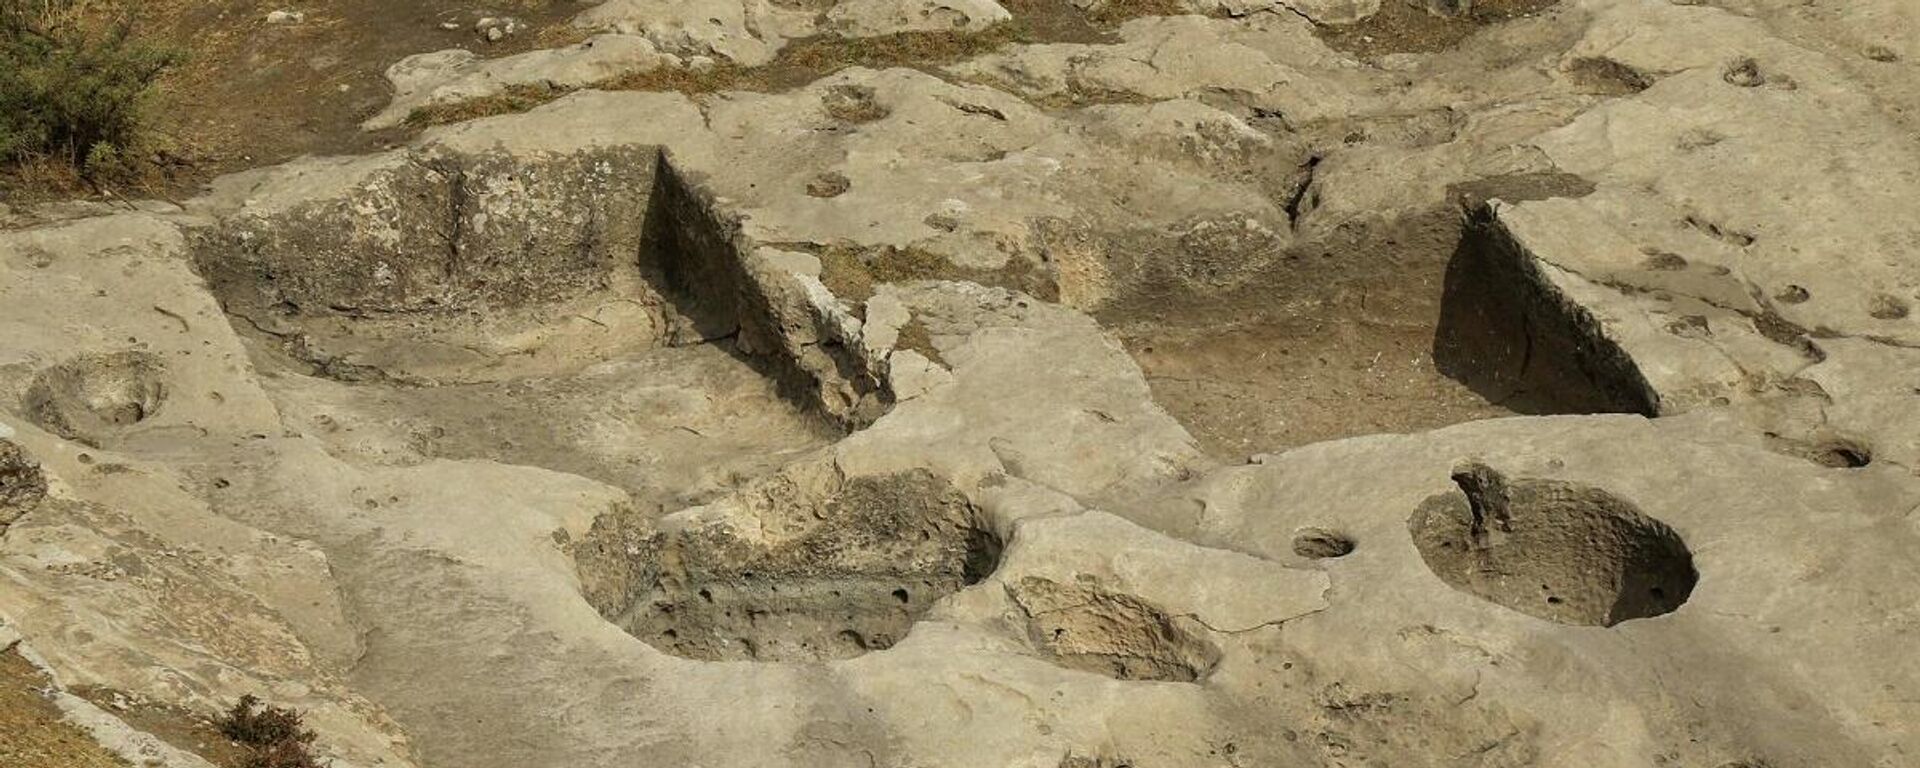 Arkeooglar, Irak'ın kuzeyinde yaklaşık 2 bin 700 yıllık, bölgenin en eski şarap presini buldu. - Sputnik Türkiye, 1920, 02.11.2021